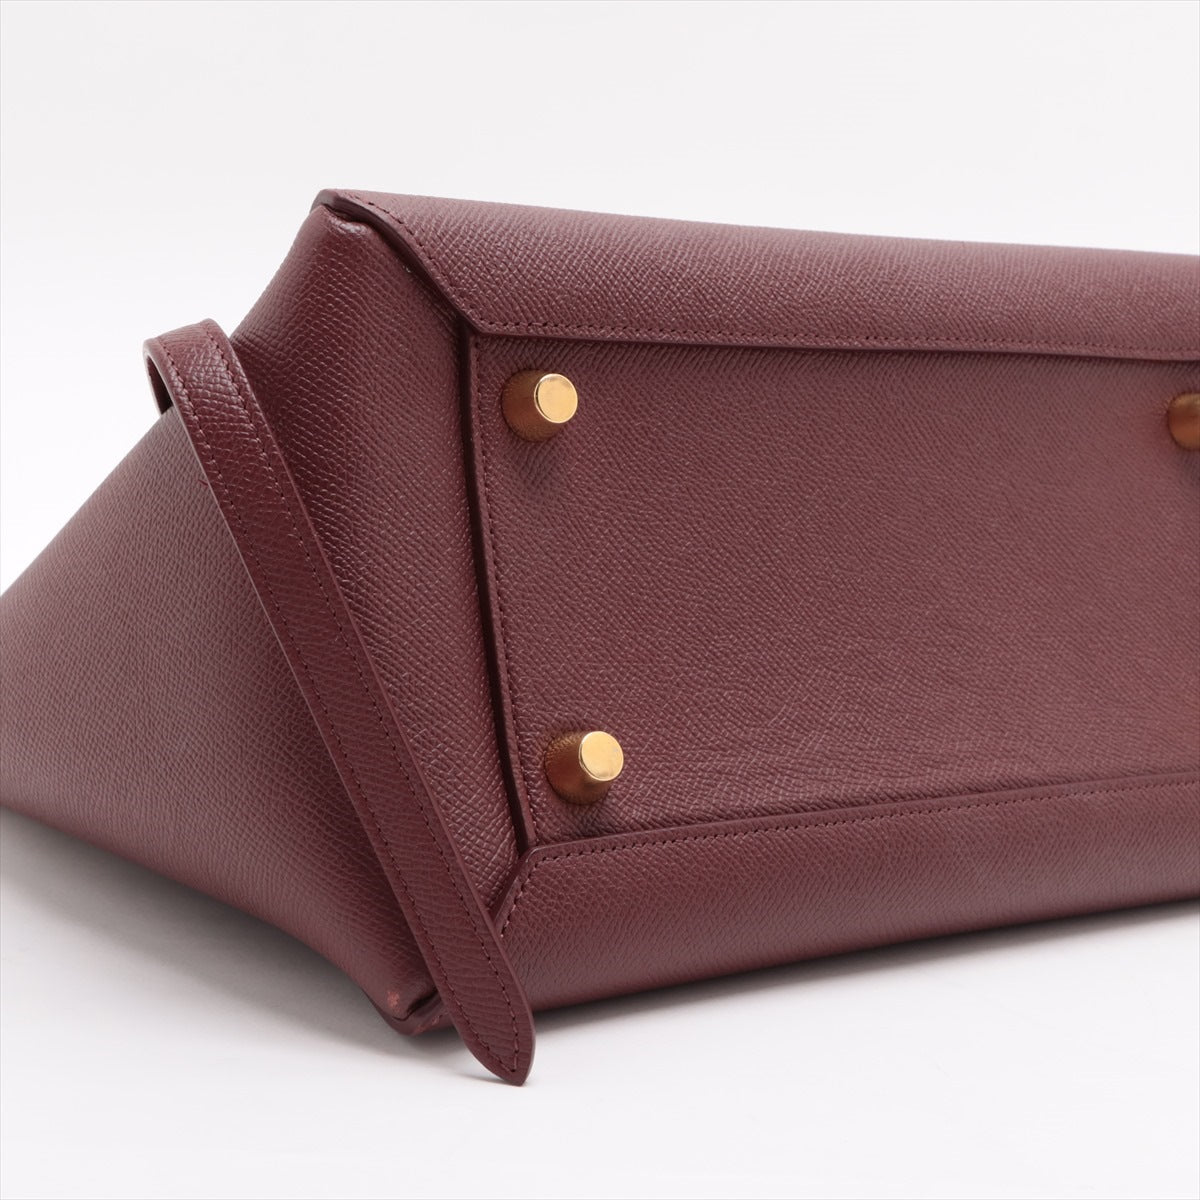 CELINE Belt Bag Leather 2way handbag Bordeaux